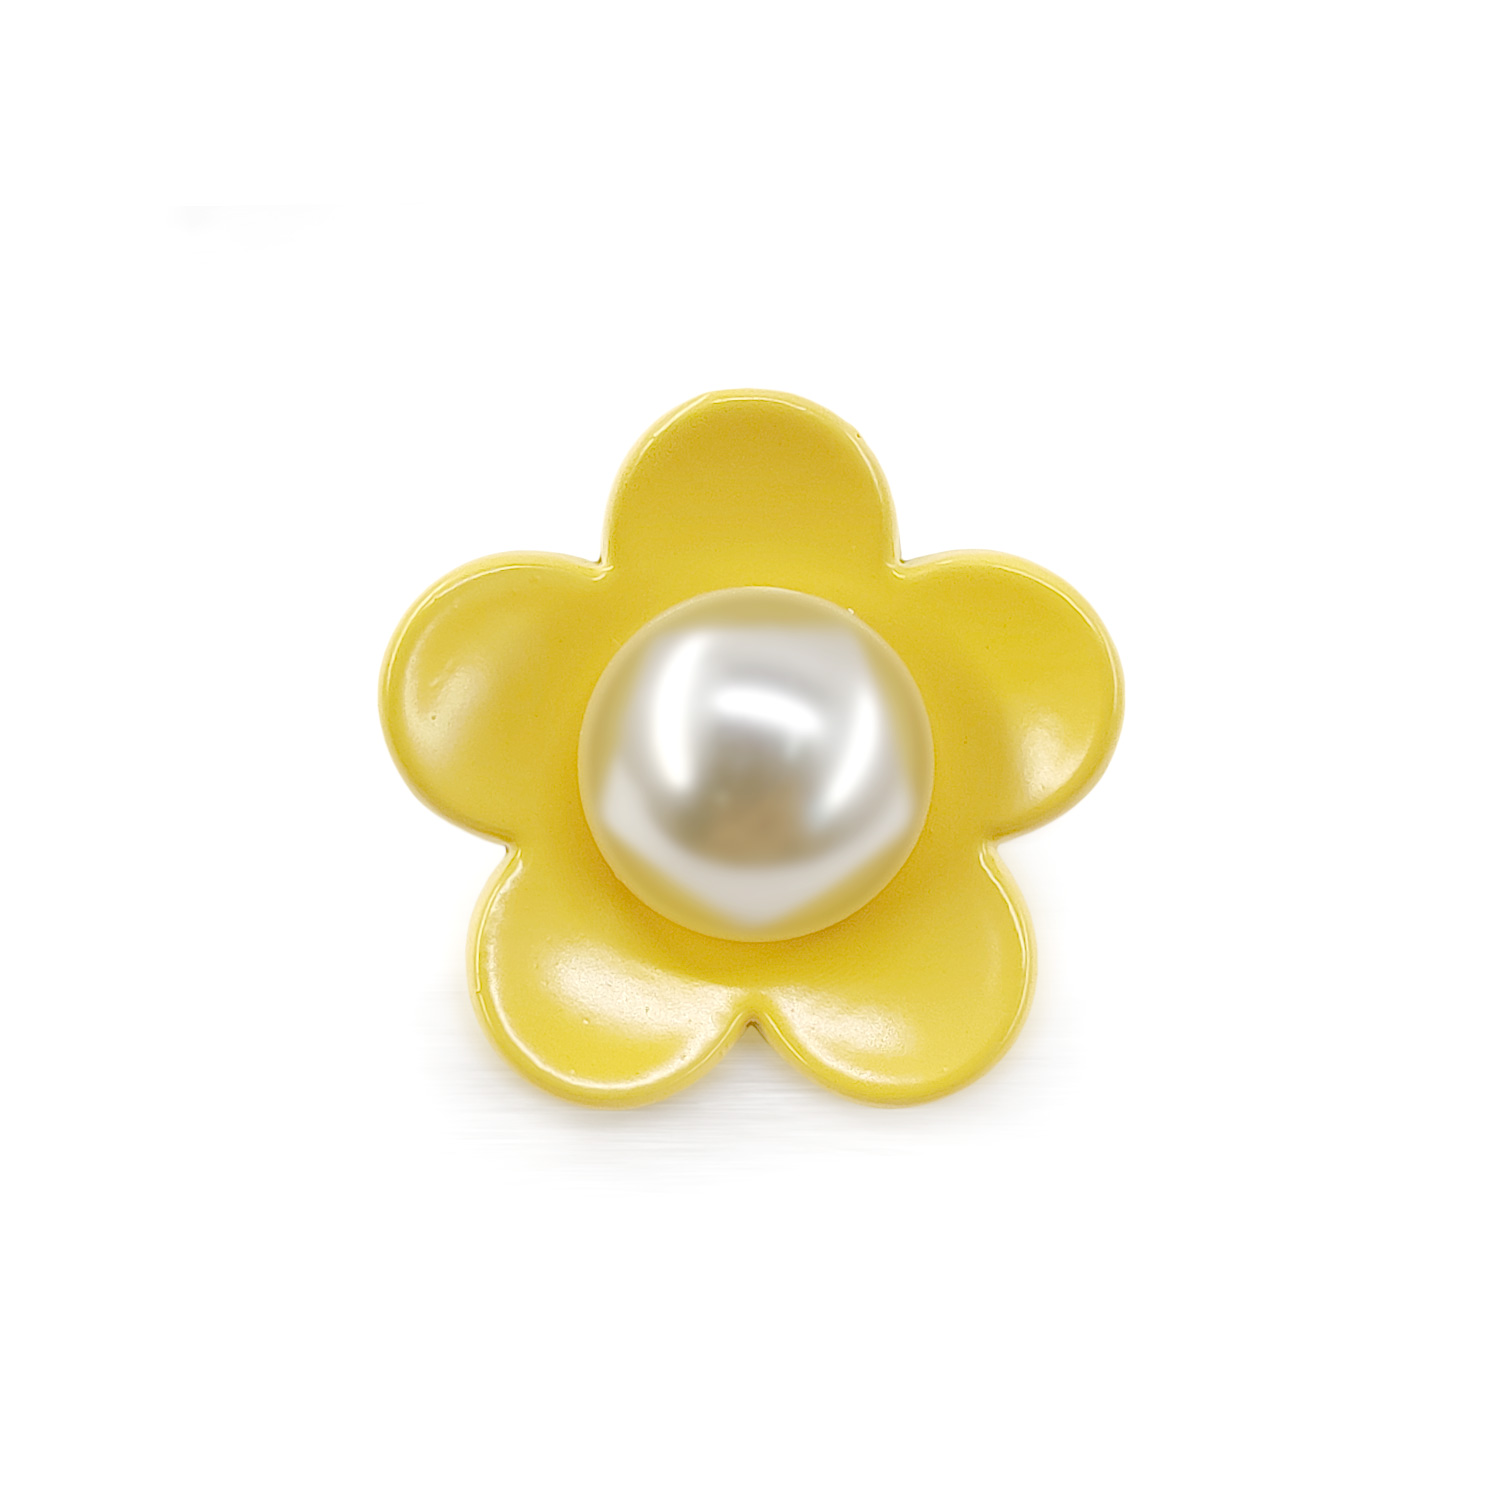 Craftisum Cute Yellow Flower Shank Sewing Buttons 20 Pcs - 25mm, 1"